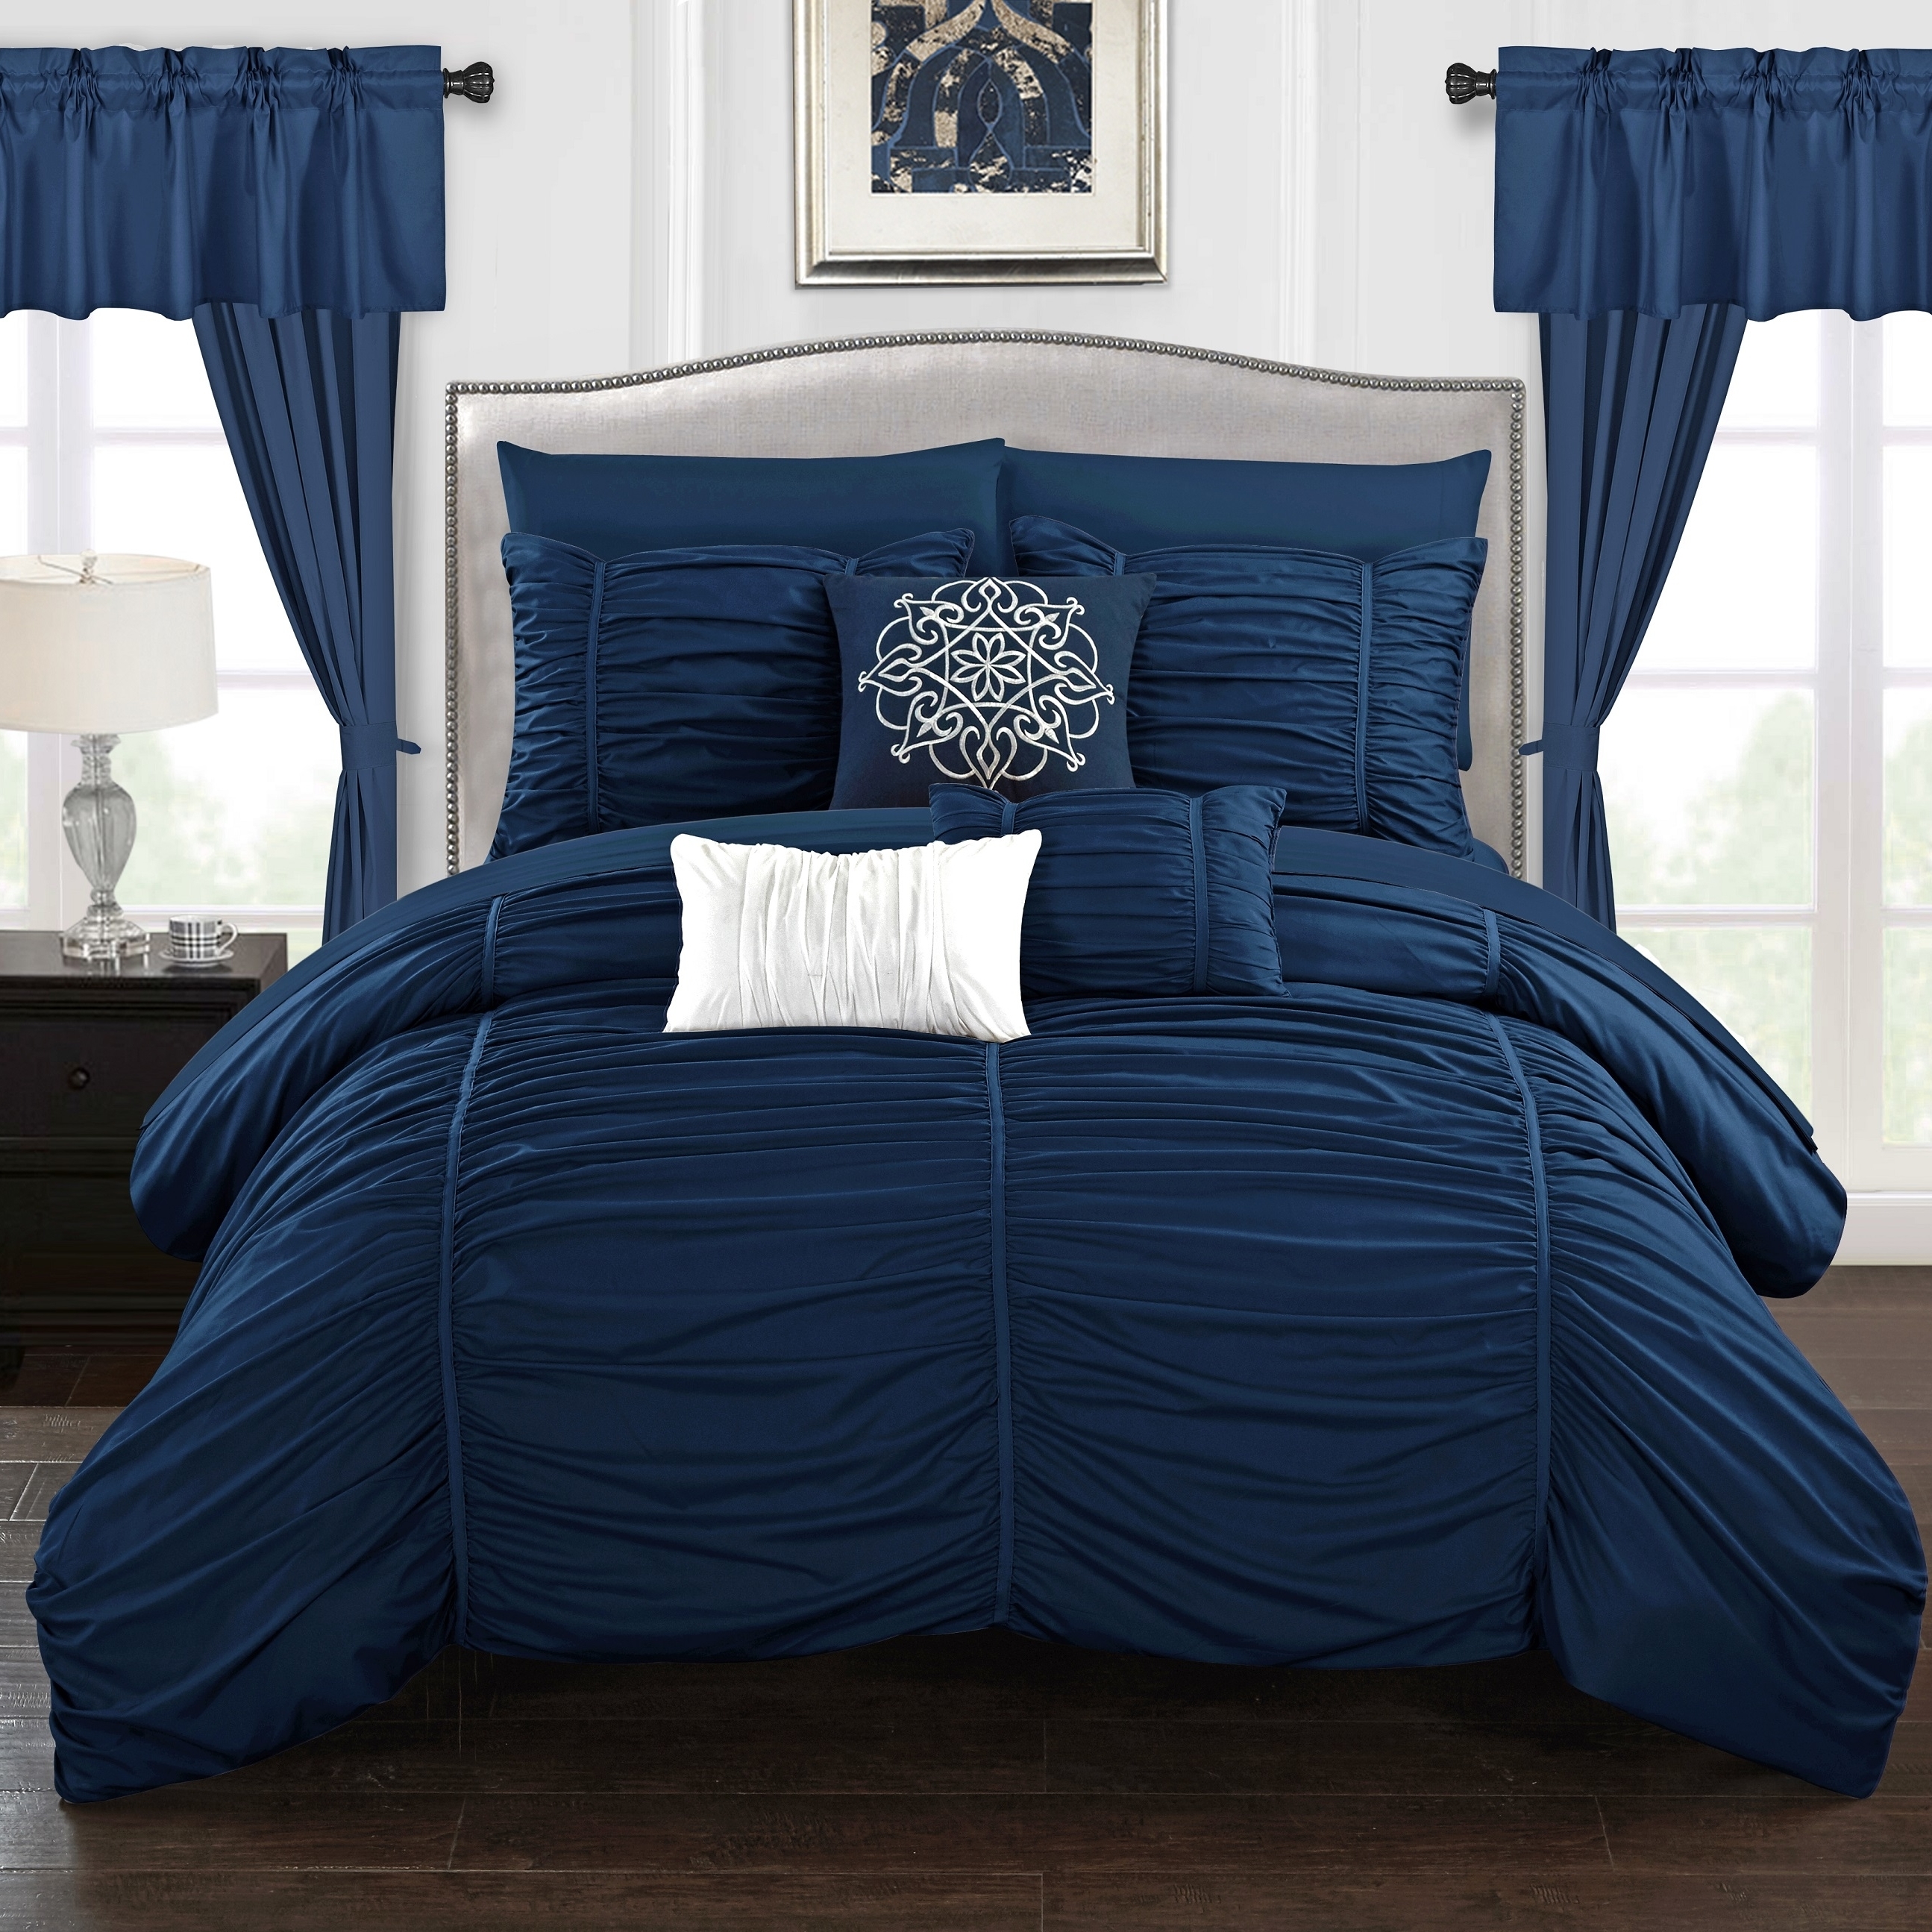 Gruyeres 20 Piece Comforter Set Ruffled Ruched Designer Bedding - Navy, Queen